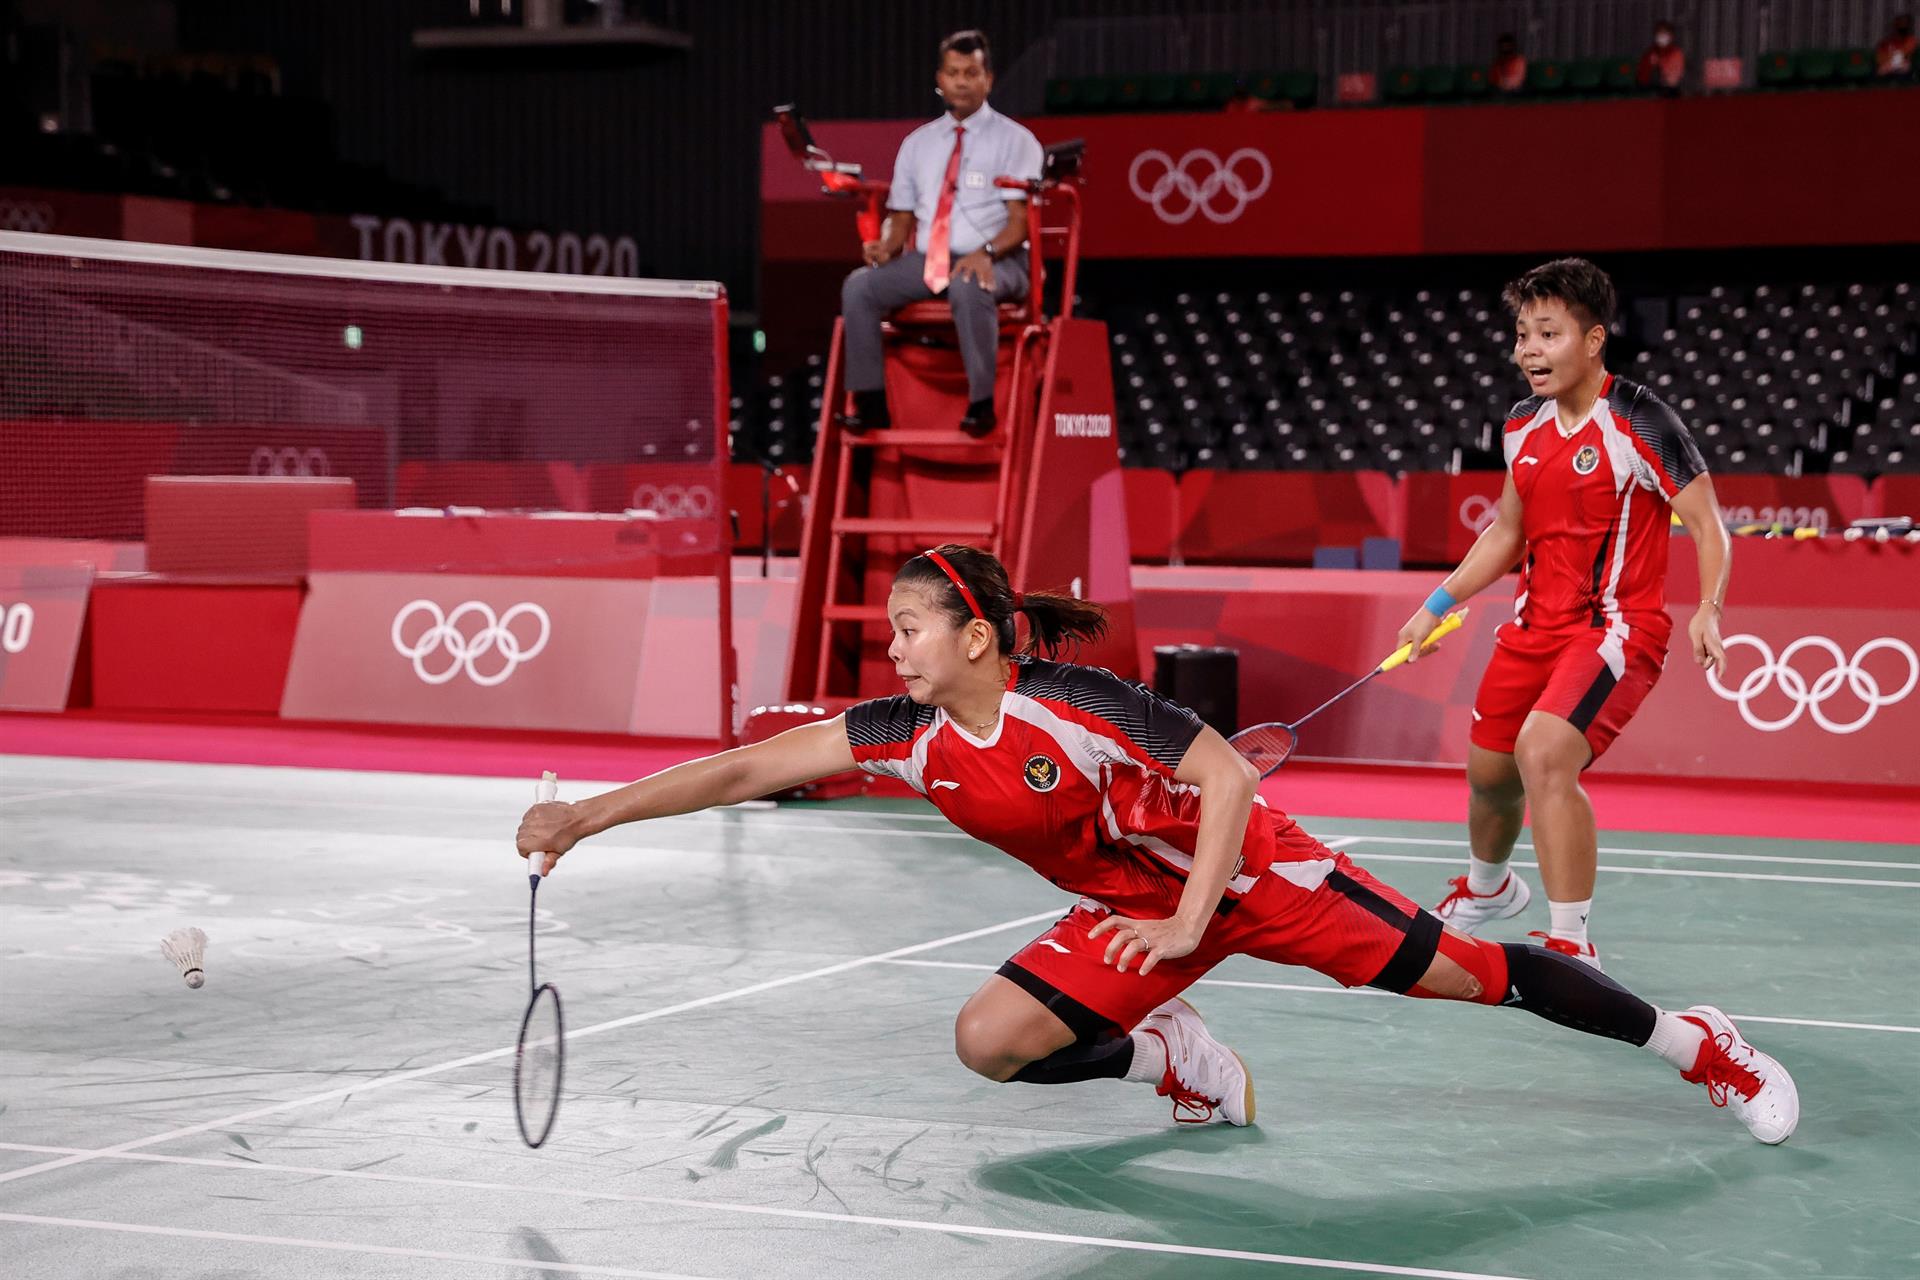 El equipo femenino de bádminton de Indonesia tuvo un complicado segundo set, sin embargo, lograron igual el oro olímpico.